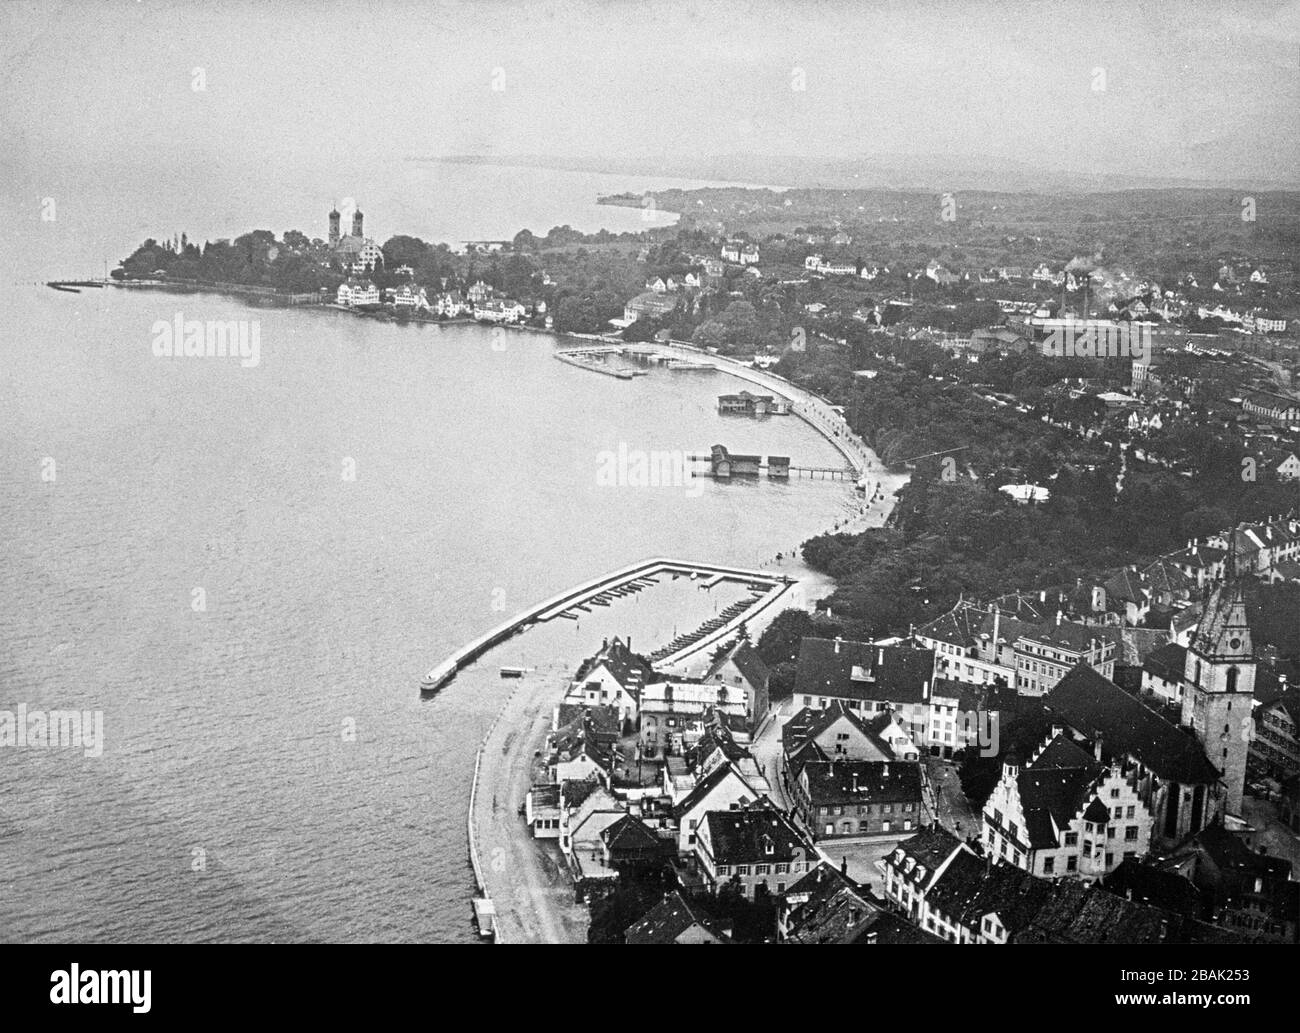 Luftbild, ca. 1920, Friedrichshafen, Bodensee, Deutschland Stockfoto